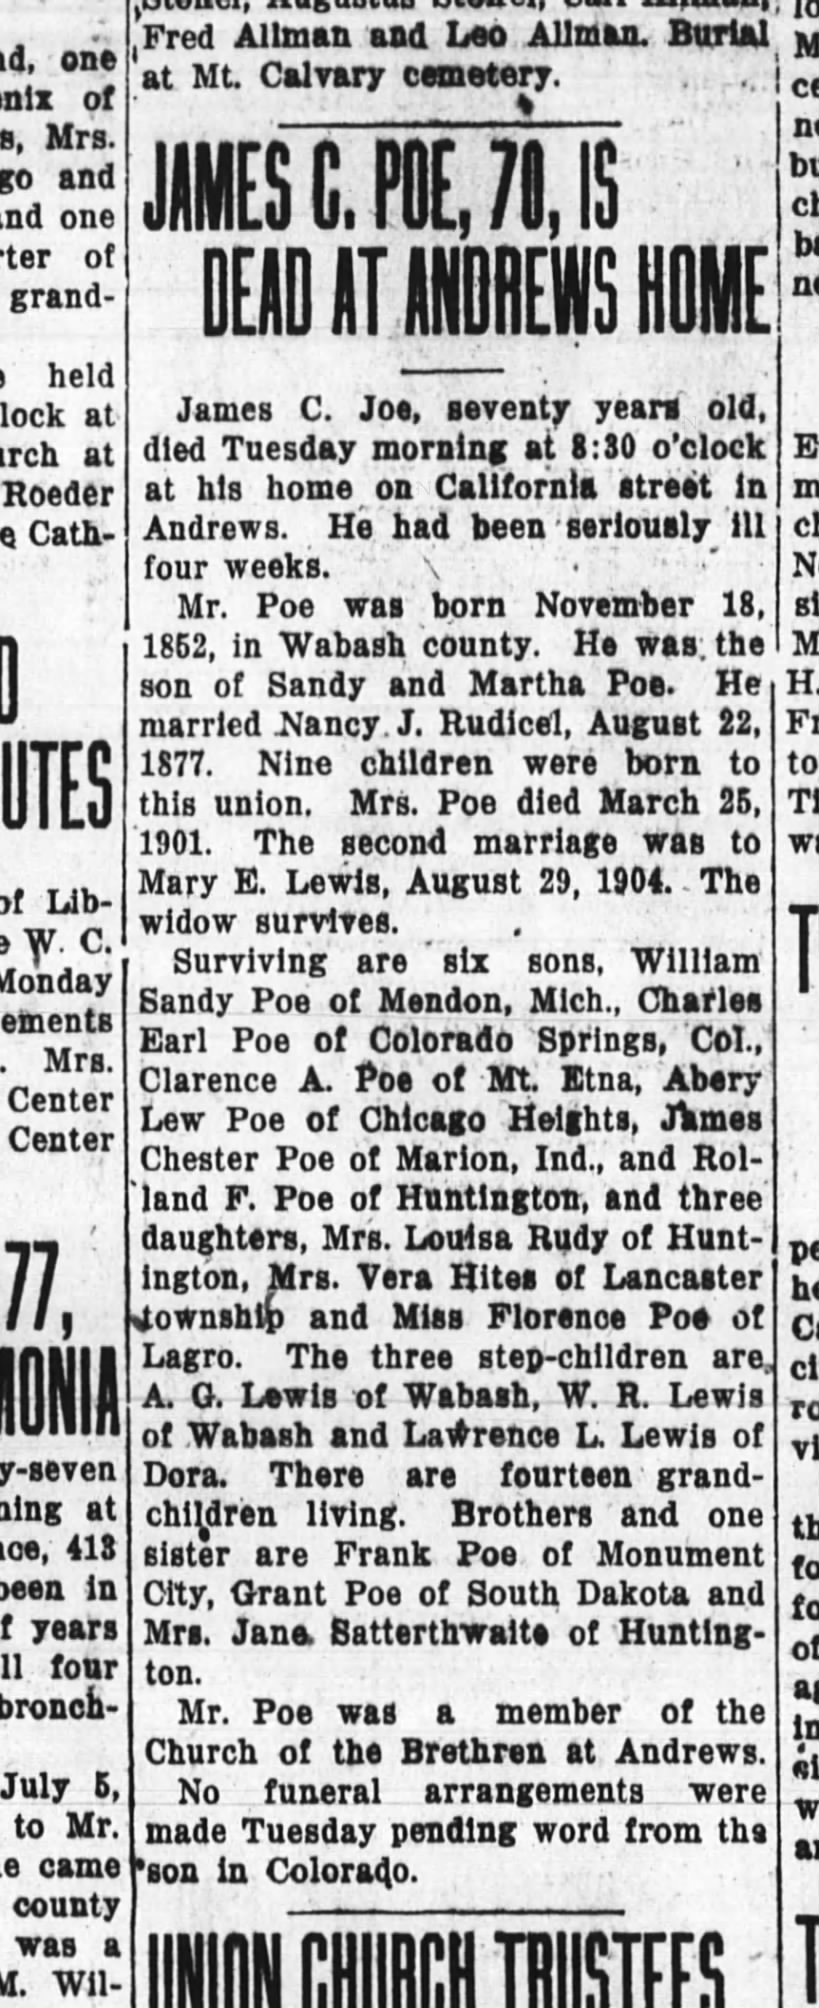 James C. Poe Obituary
The Huntington Herald, Huntington, Indiana
30 January 1923